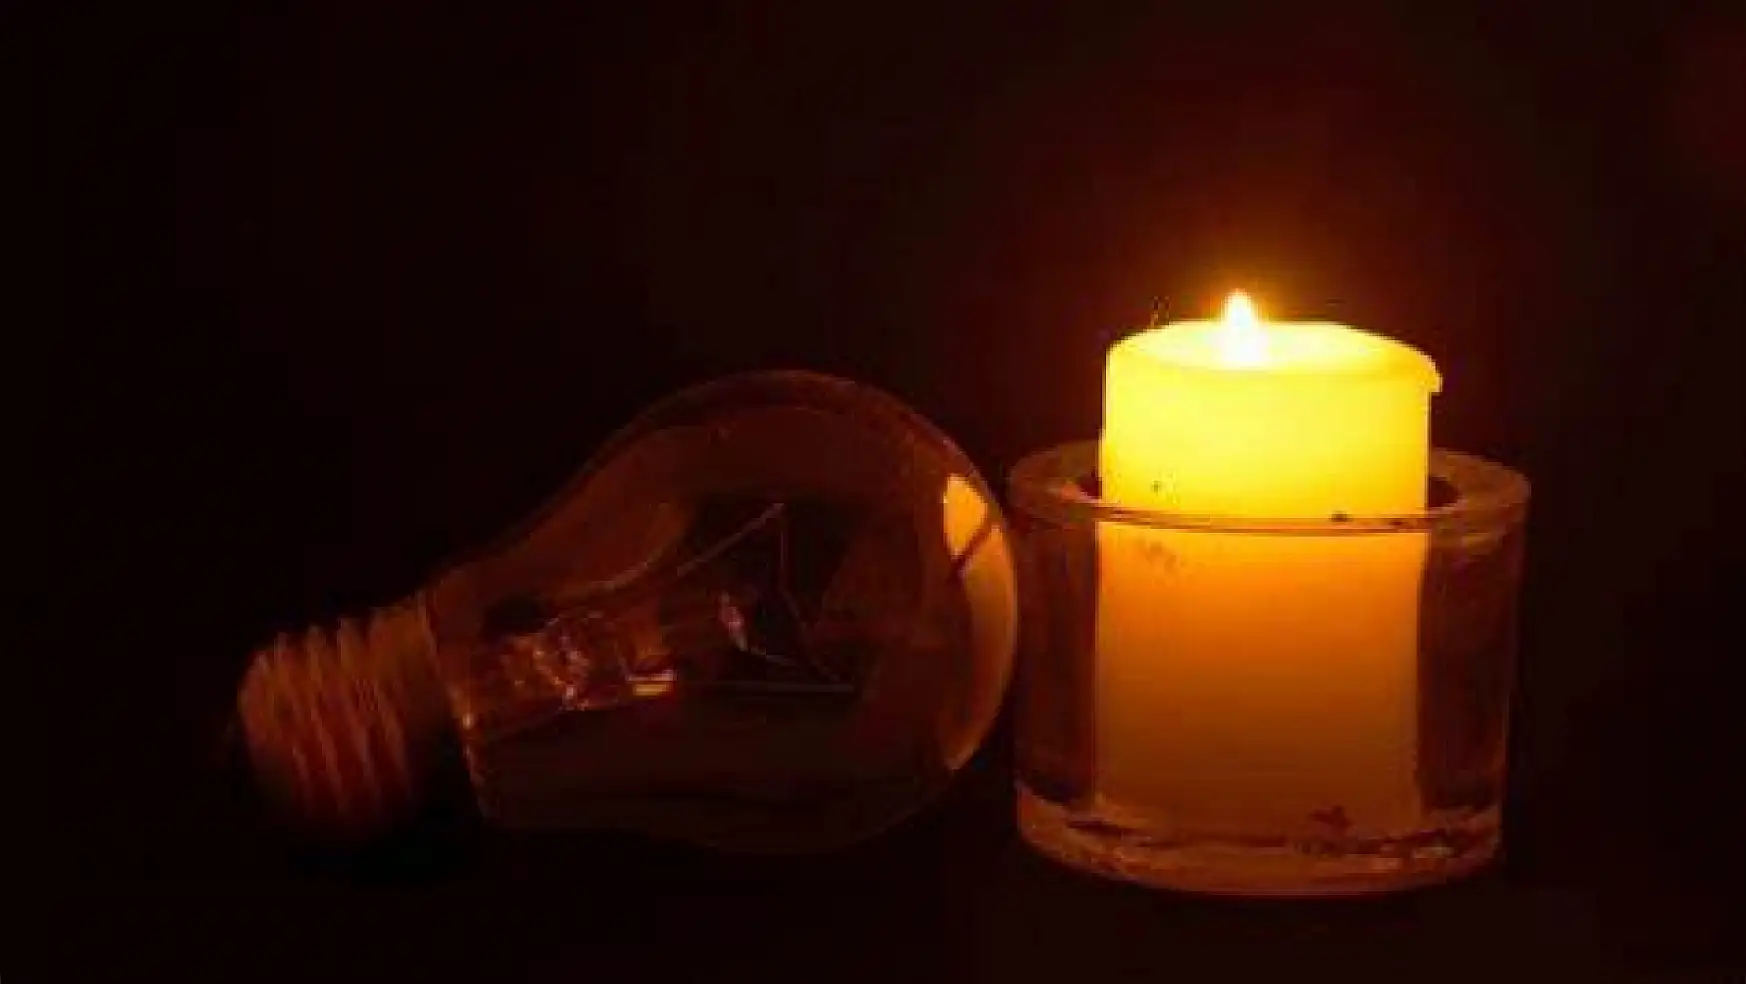 Konya karanlığa gömülecek:  Konya'nın o 3 ilçesinde elektrik kesintisi yaşanacak!